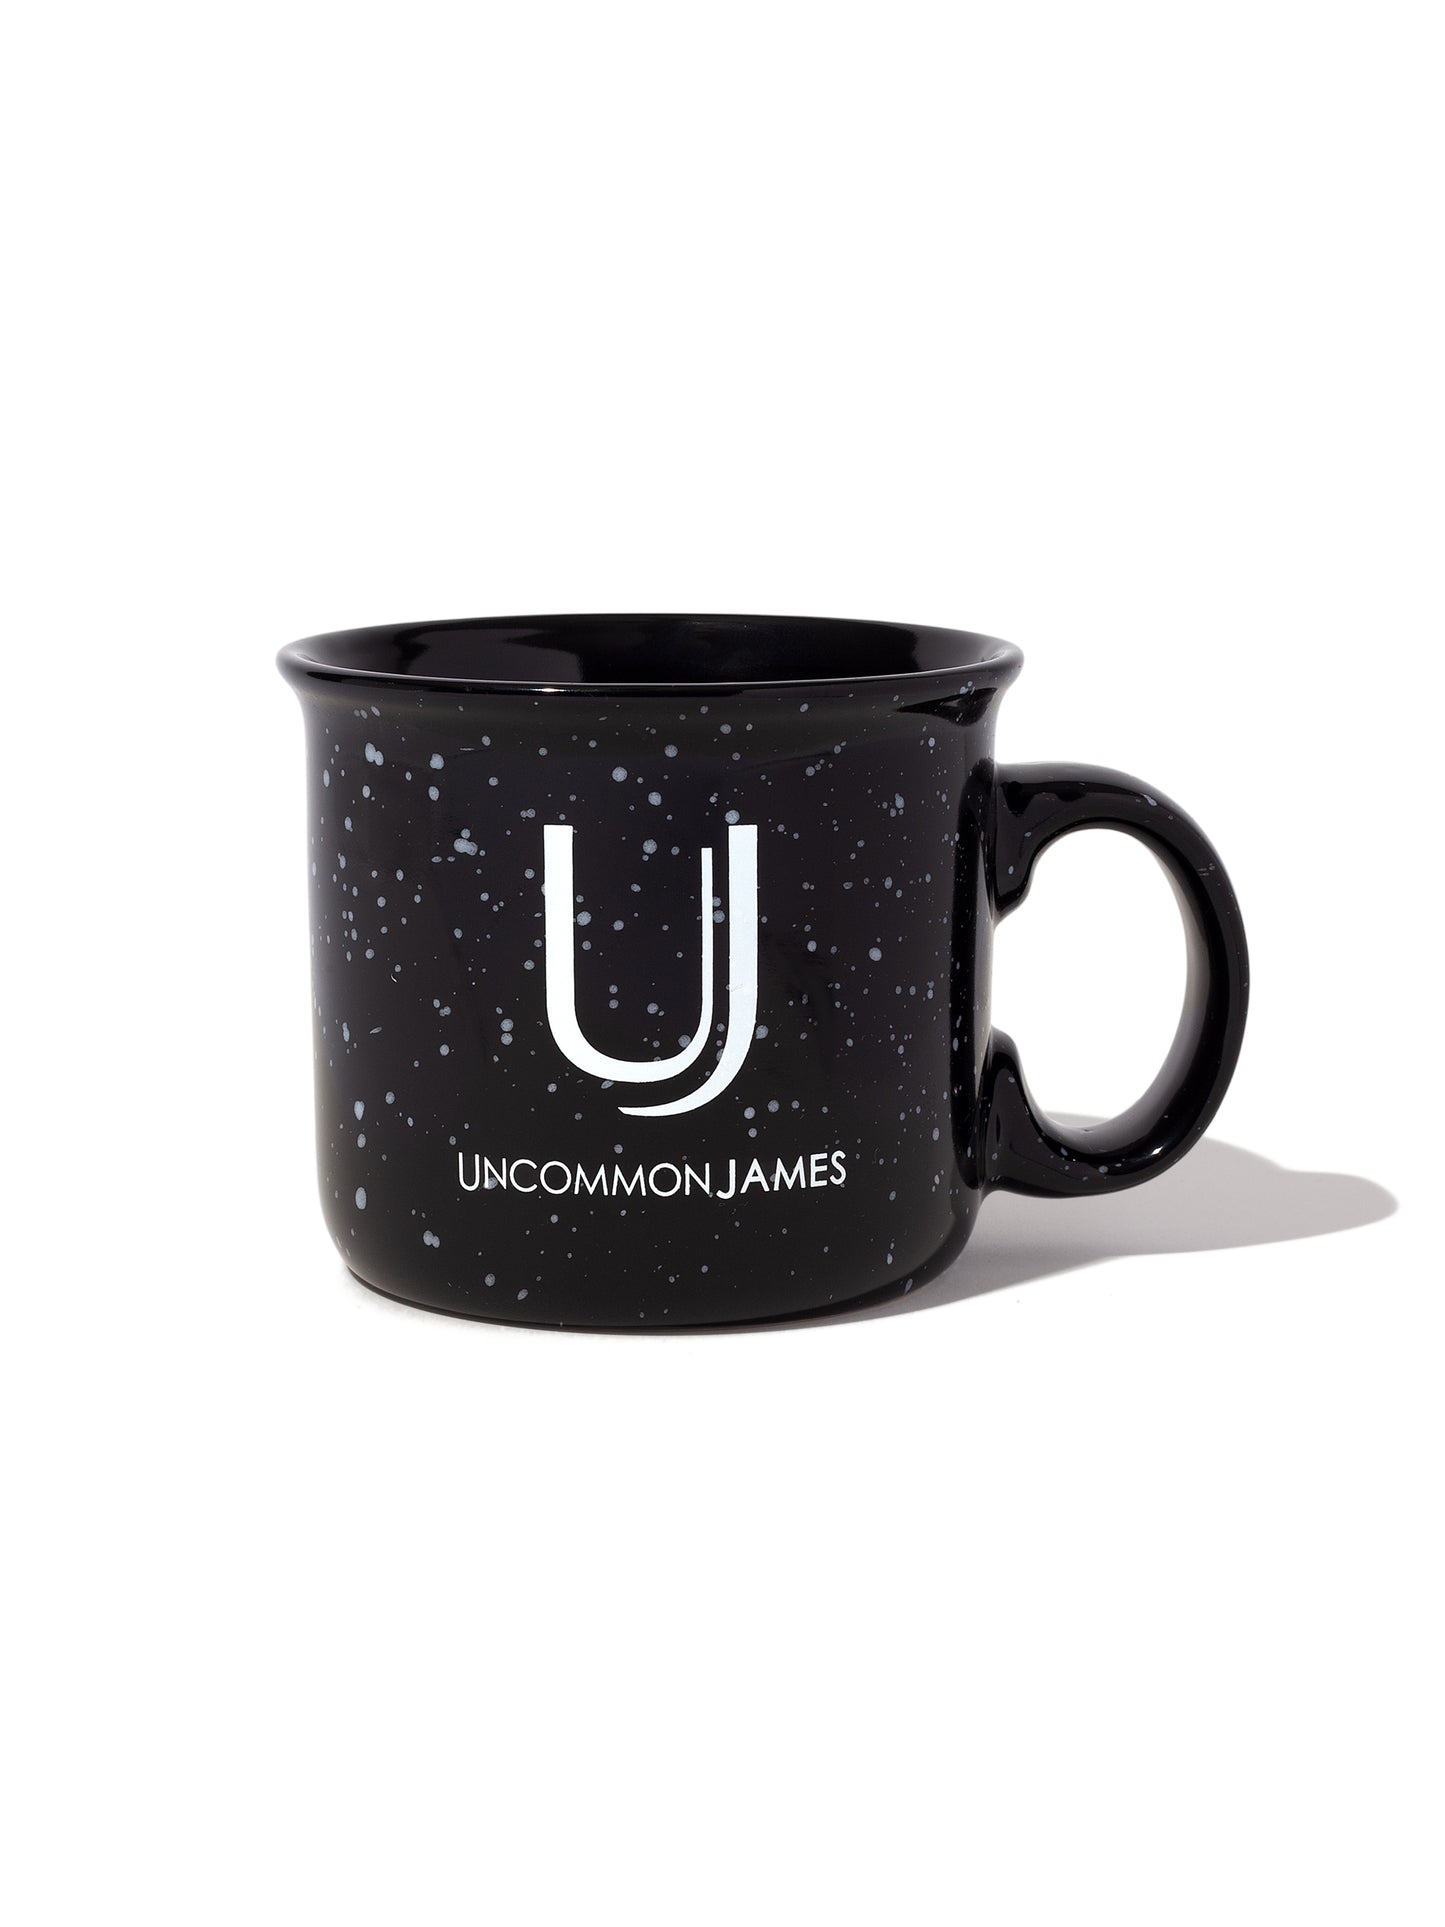 Uncommon James Mug | Black | Product Image | Uncommon Lifestyle